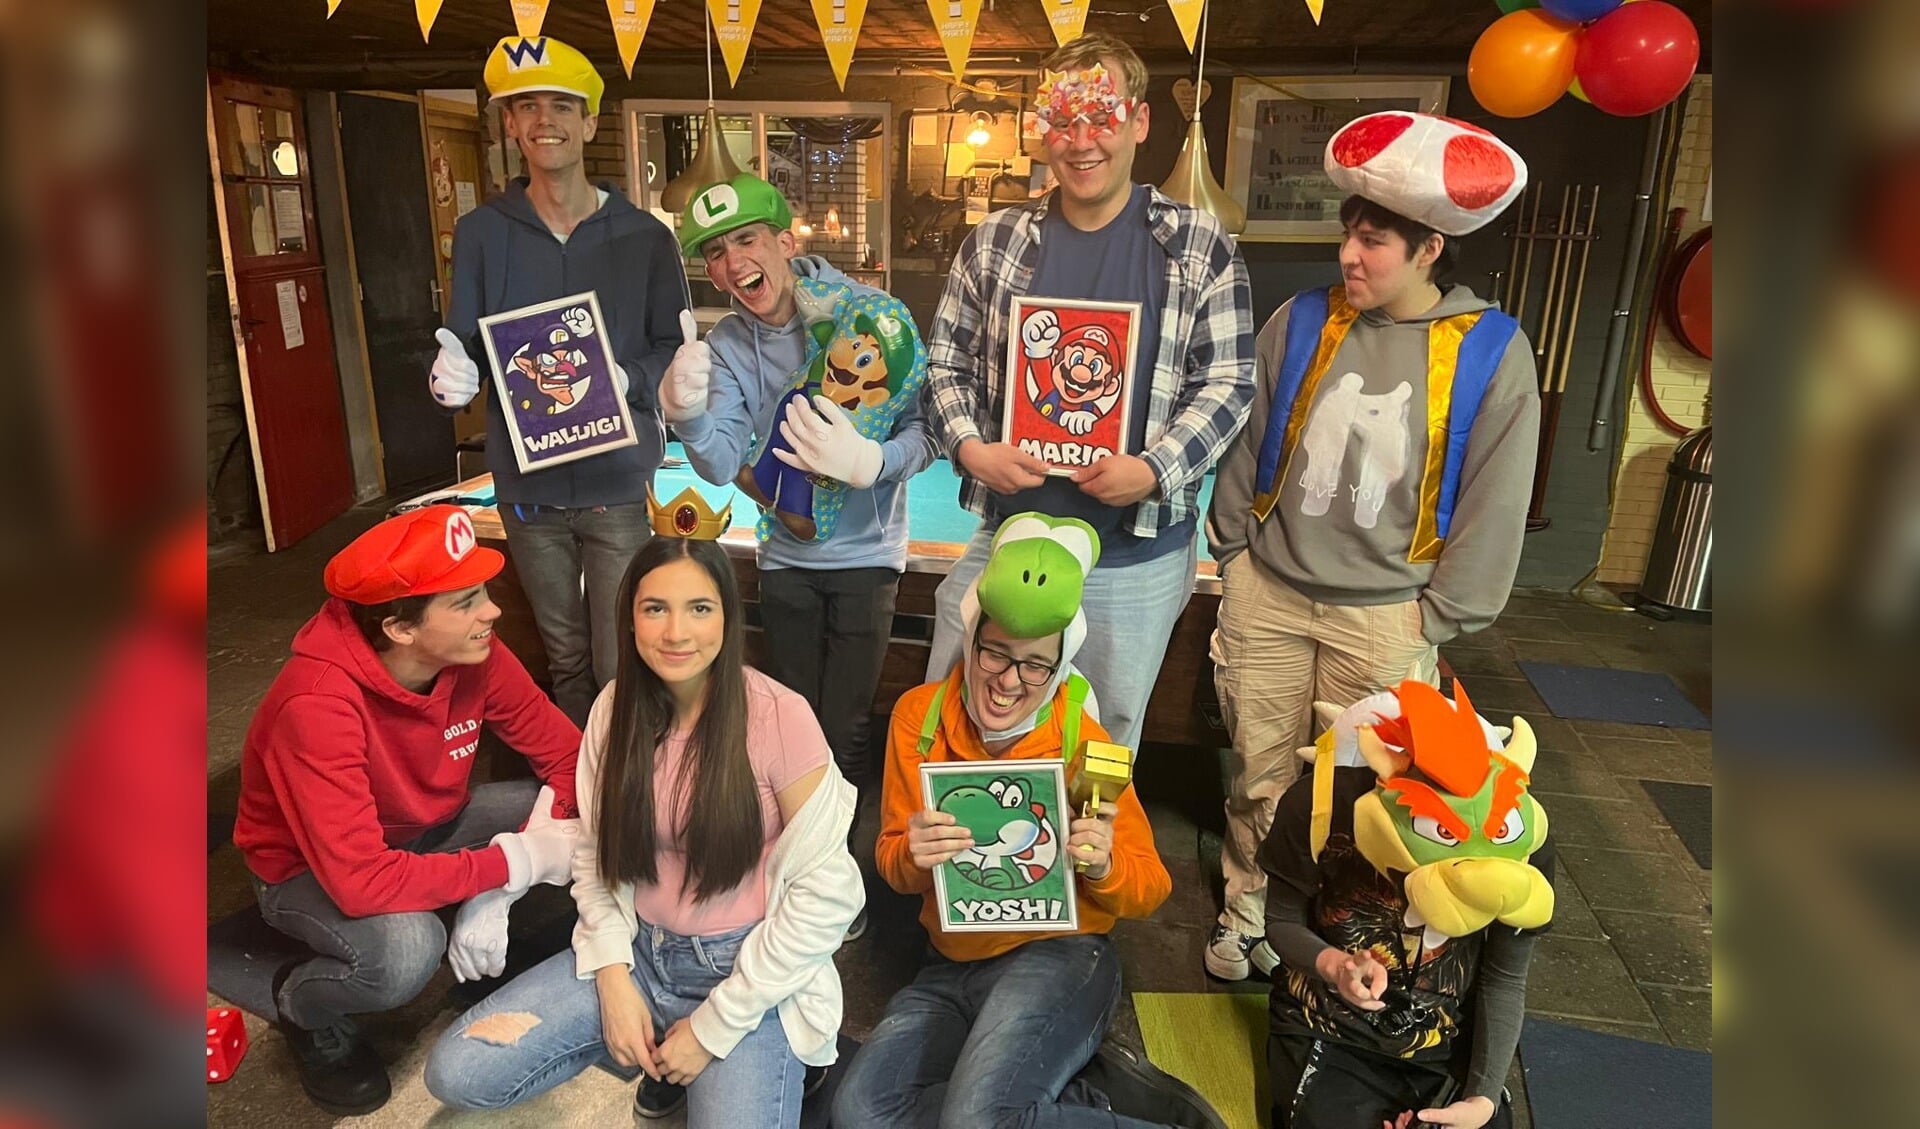 De oude Smederij in Someren werd omgetoverd tot een spelarena voor het Real Life Mario Party evenement.